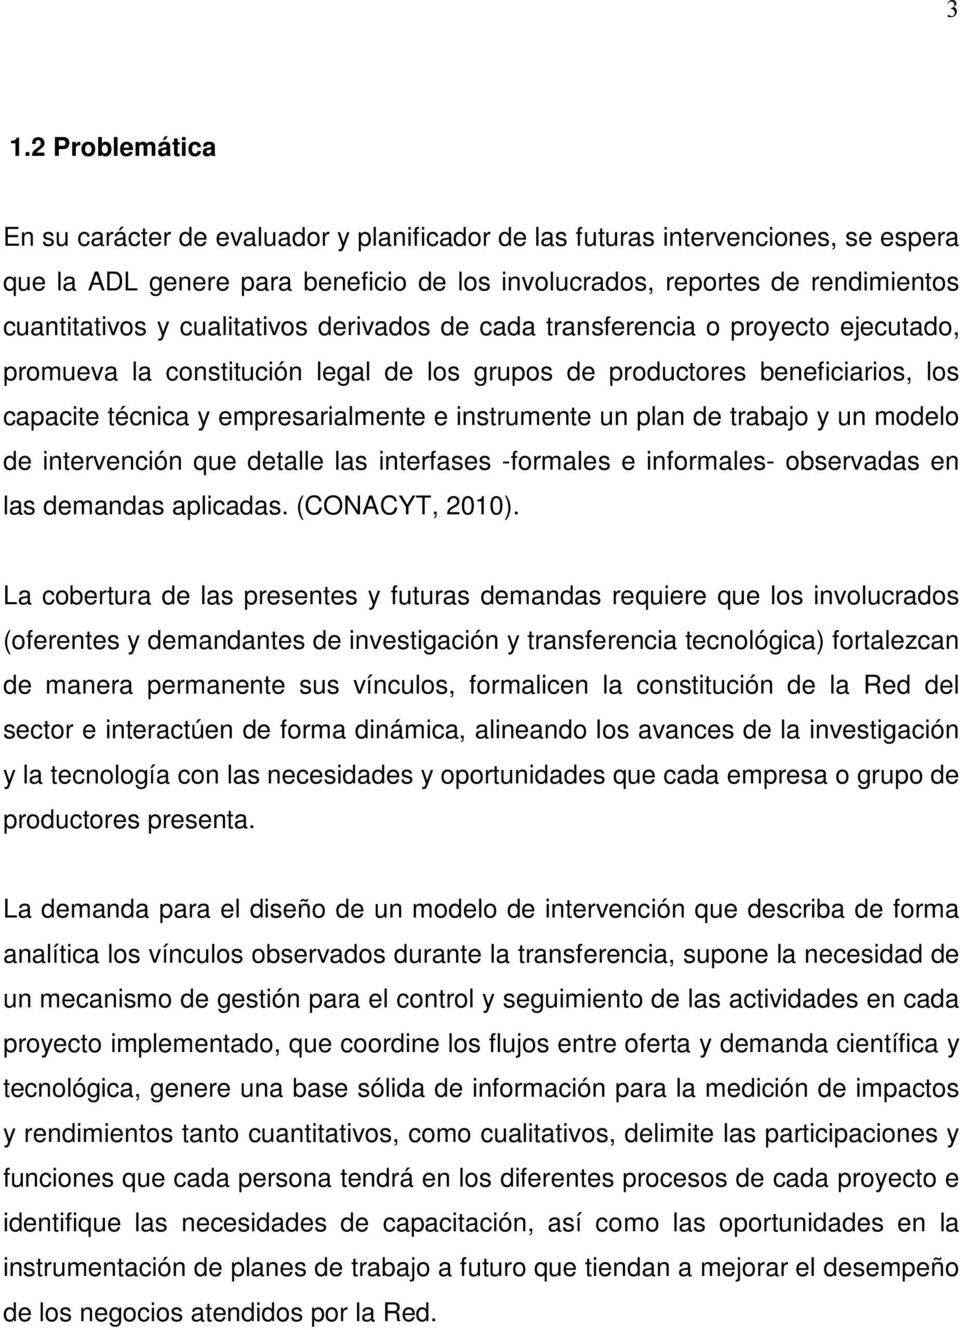 plan de trabajo y un modelo de intervención que detalle las interfases -formales e informales- observadas en las demandas aplicadas. (CONACYT, 2010).